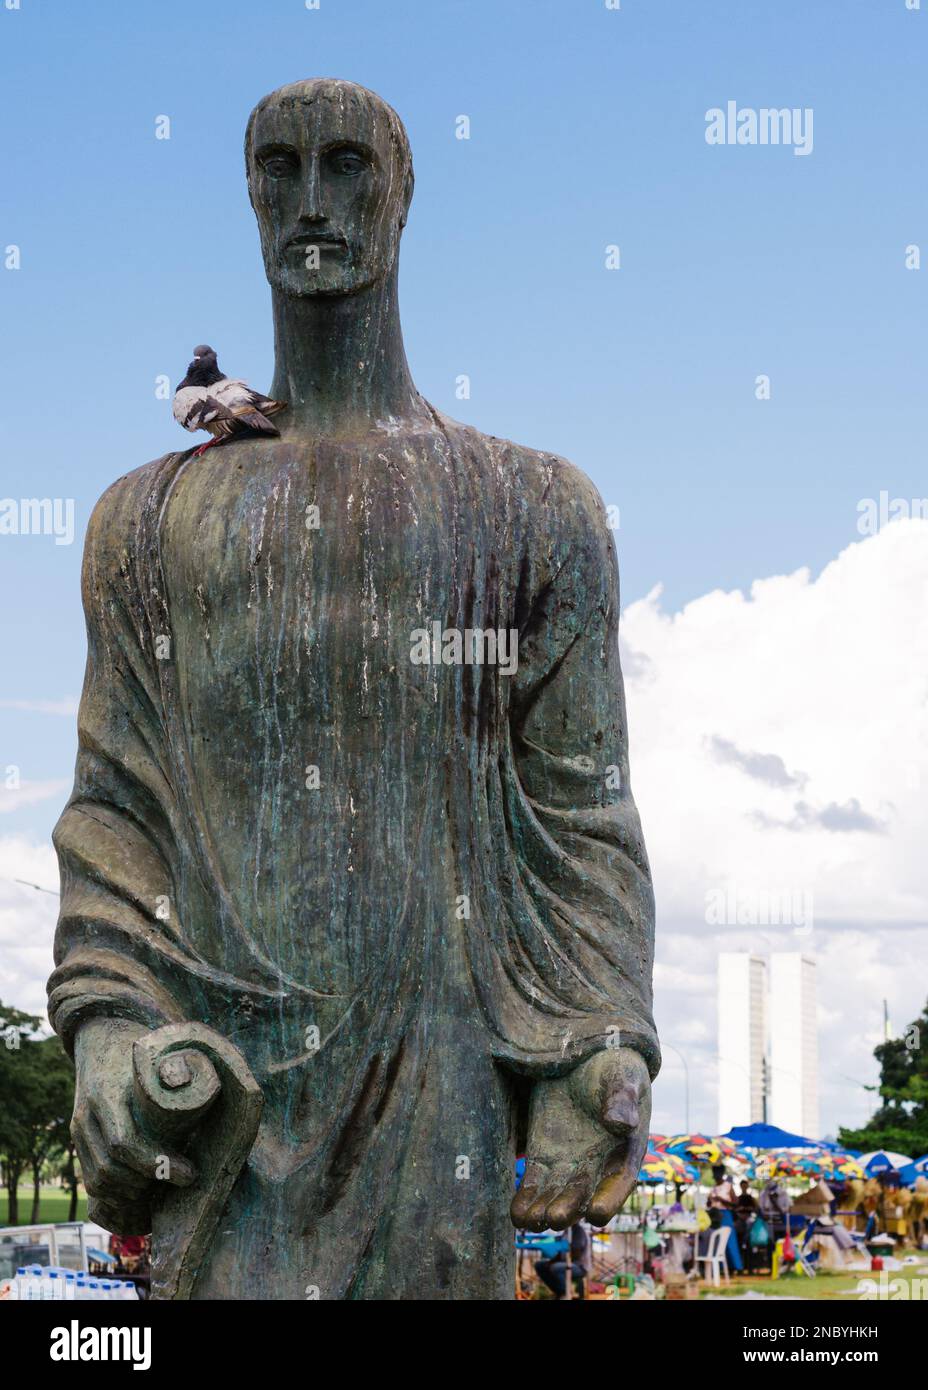 Brasilia, Brazil - February 13, 2023: Statue in Brasilia, Brazil with Planalto government buildings in background Stock Photo